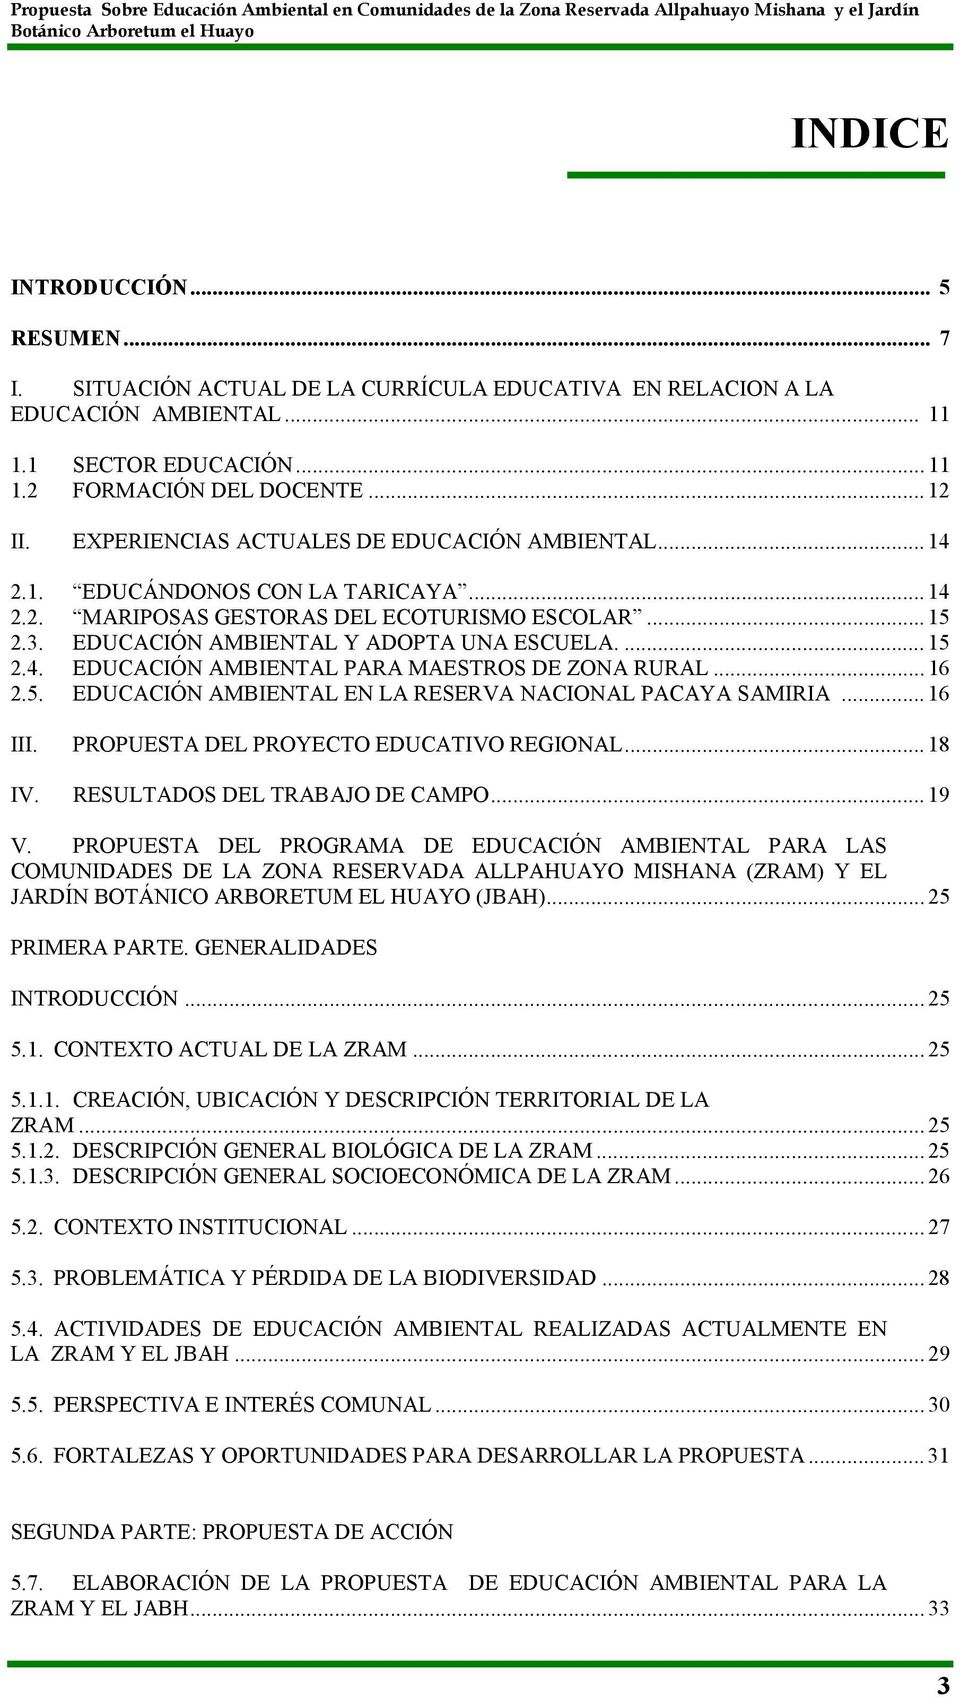 .. 16 2.5. EDUCACIÓN AMBIENTAL EN LA RESERVA NACIONAL PACAYA SAMIRIA... 16 III. PROPUESTA DEL PROYECTO EDUCATIVO REGIONAL... 18 IV. RESULTADOS DEL TRABAJO DE CAMPO... 19 V.